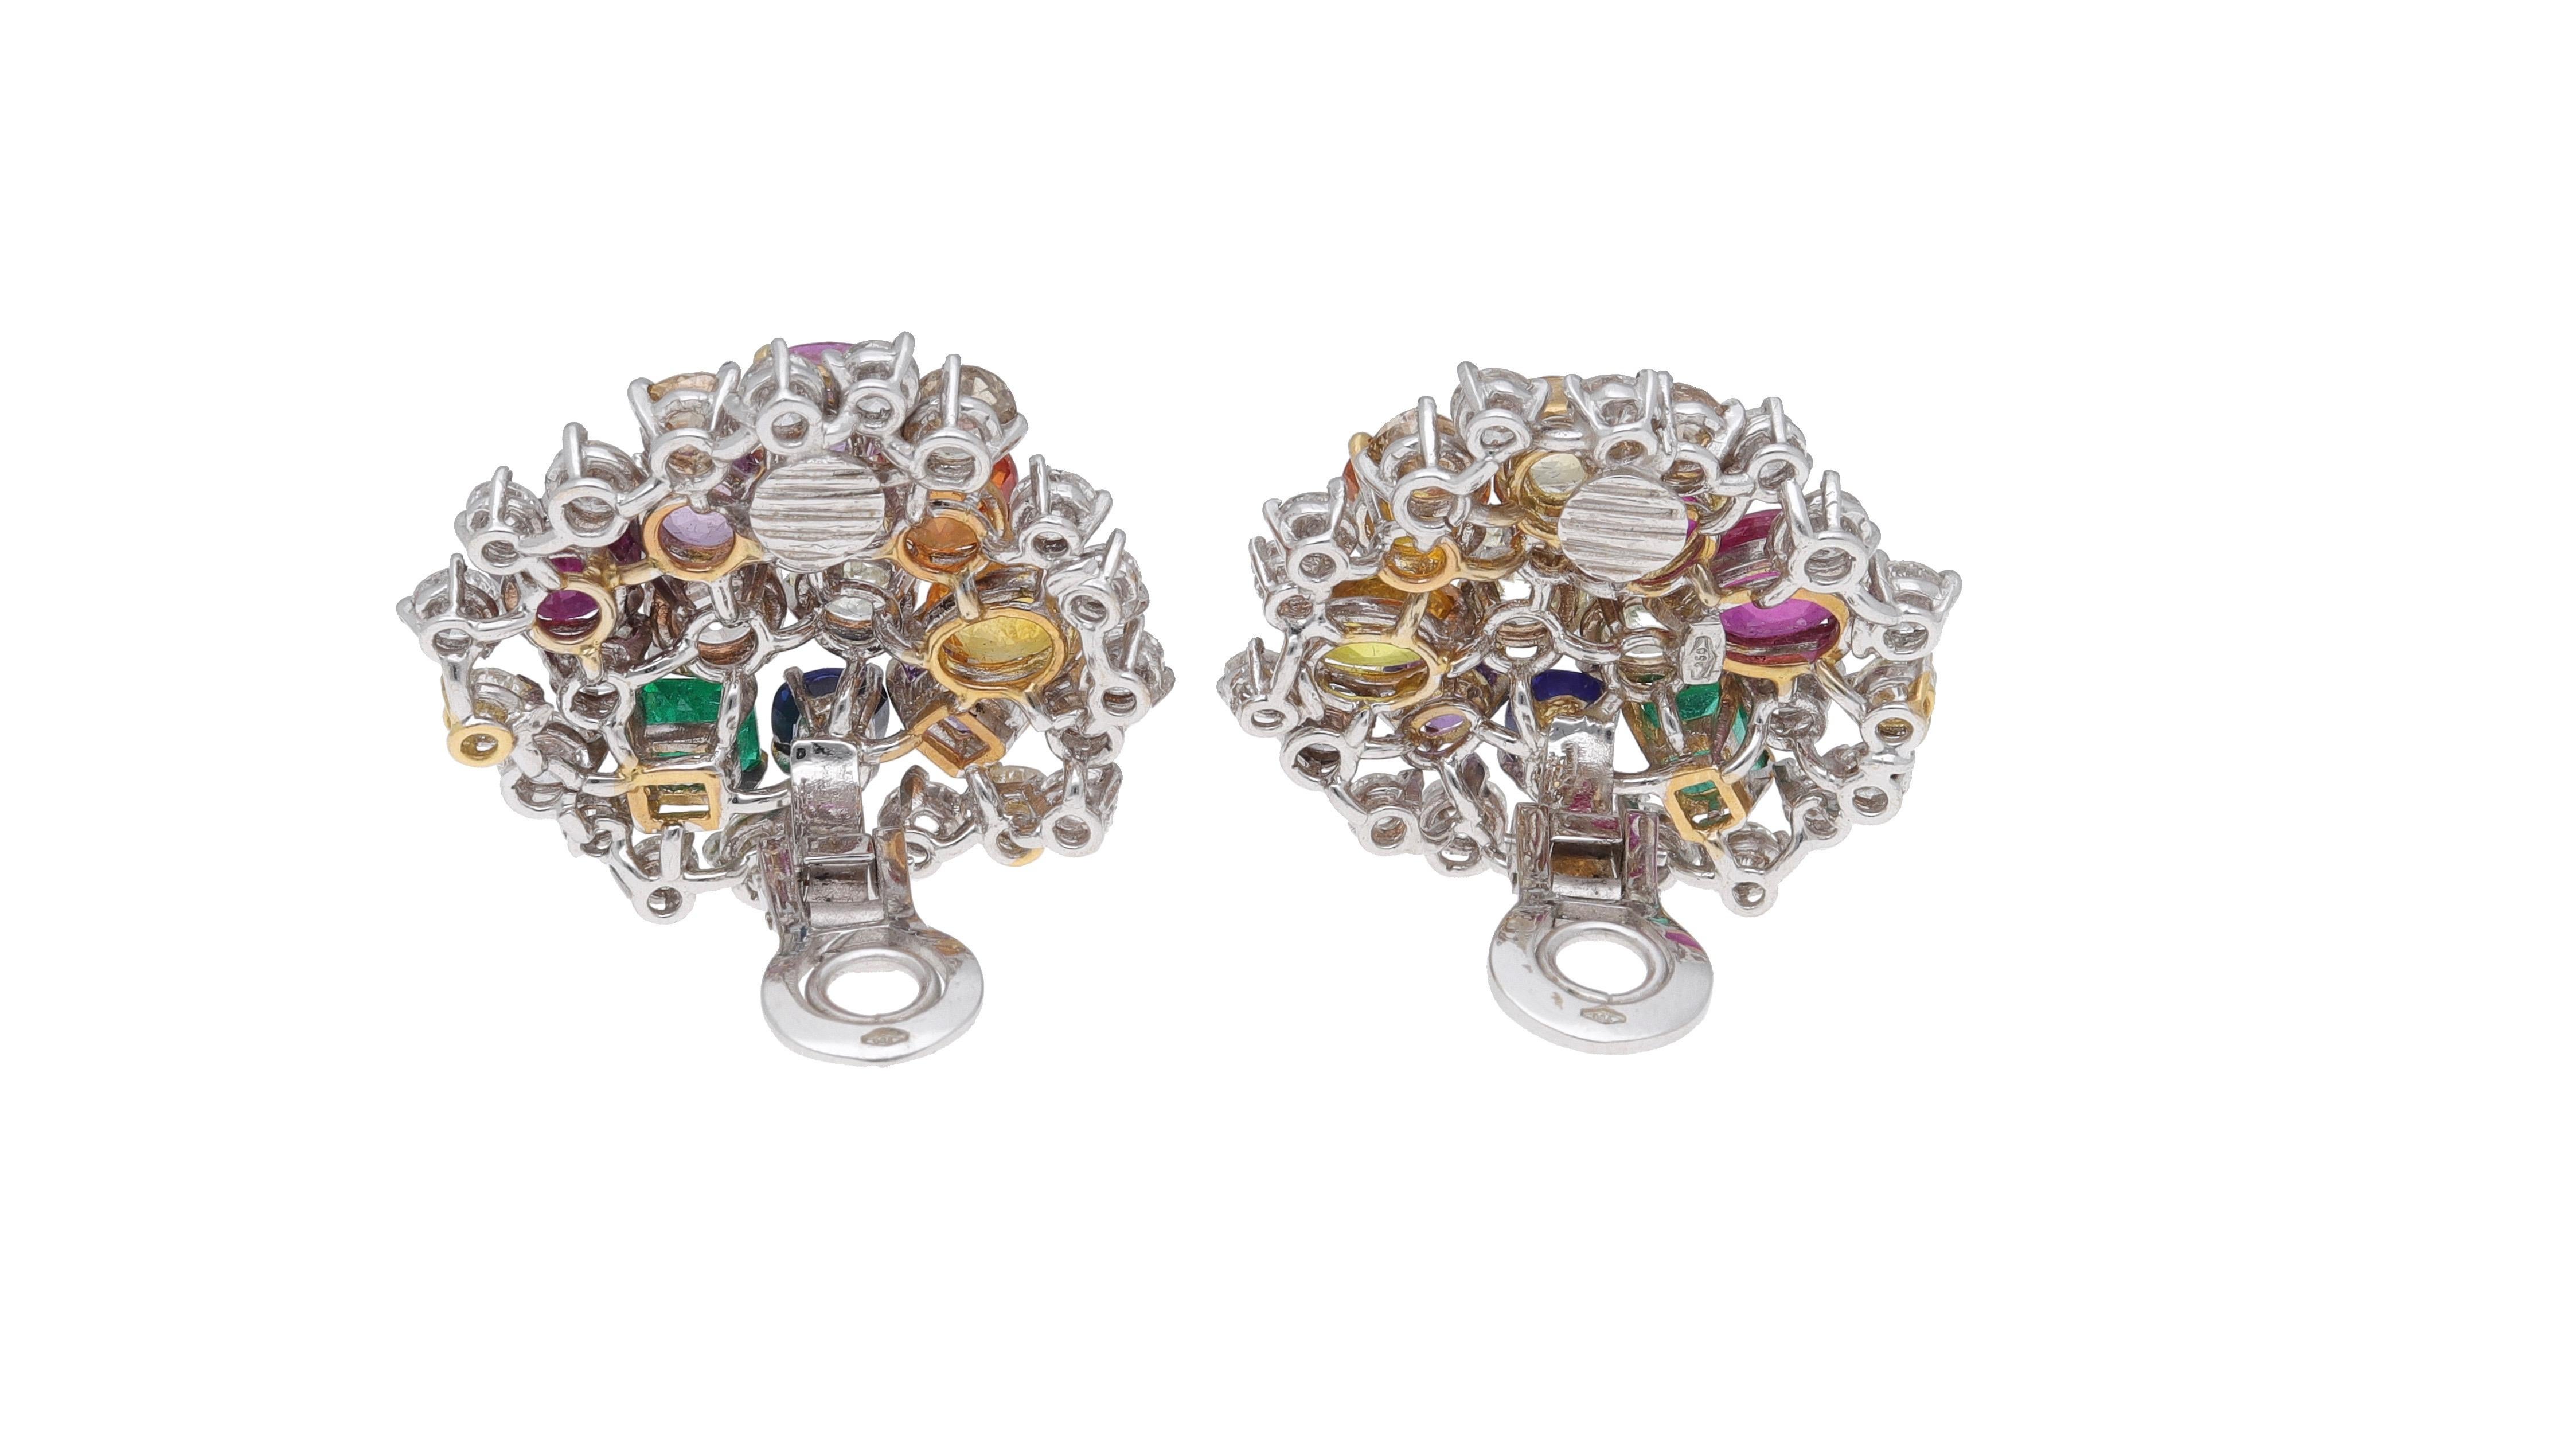 Fraleoni 18 Karat White Gold Diamonds Rubies Emeralds Sapphires Earrings For Sale 2